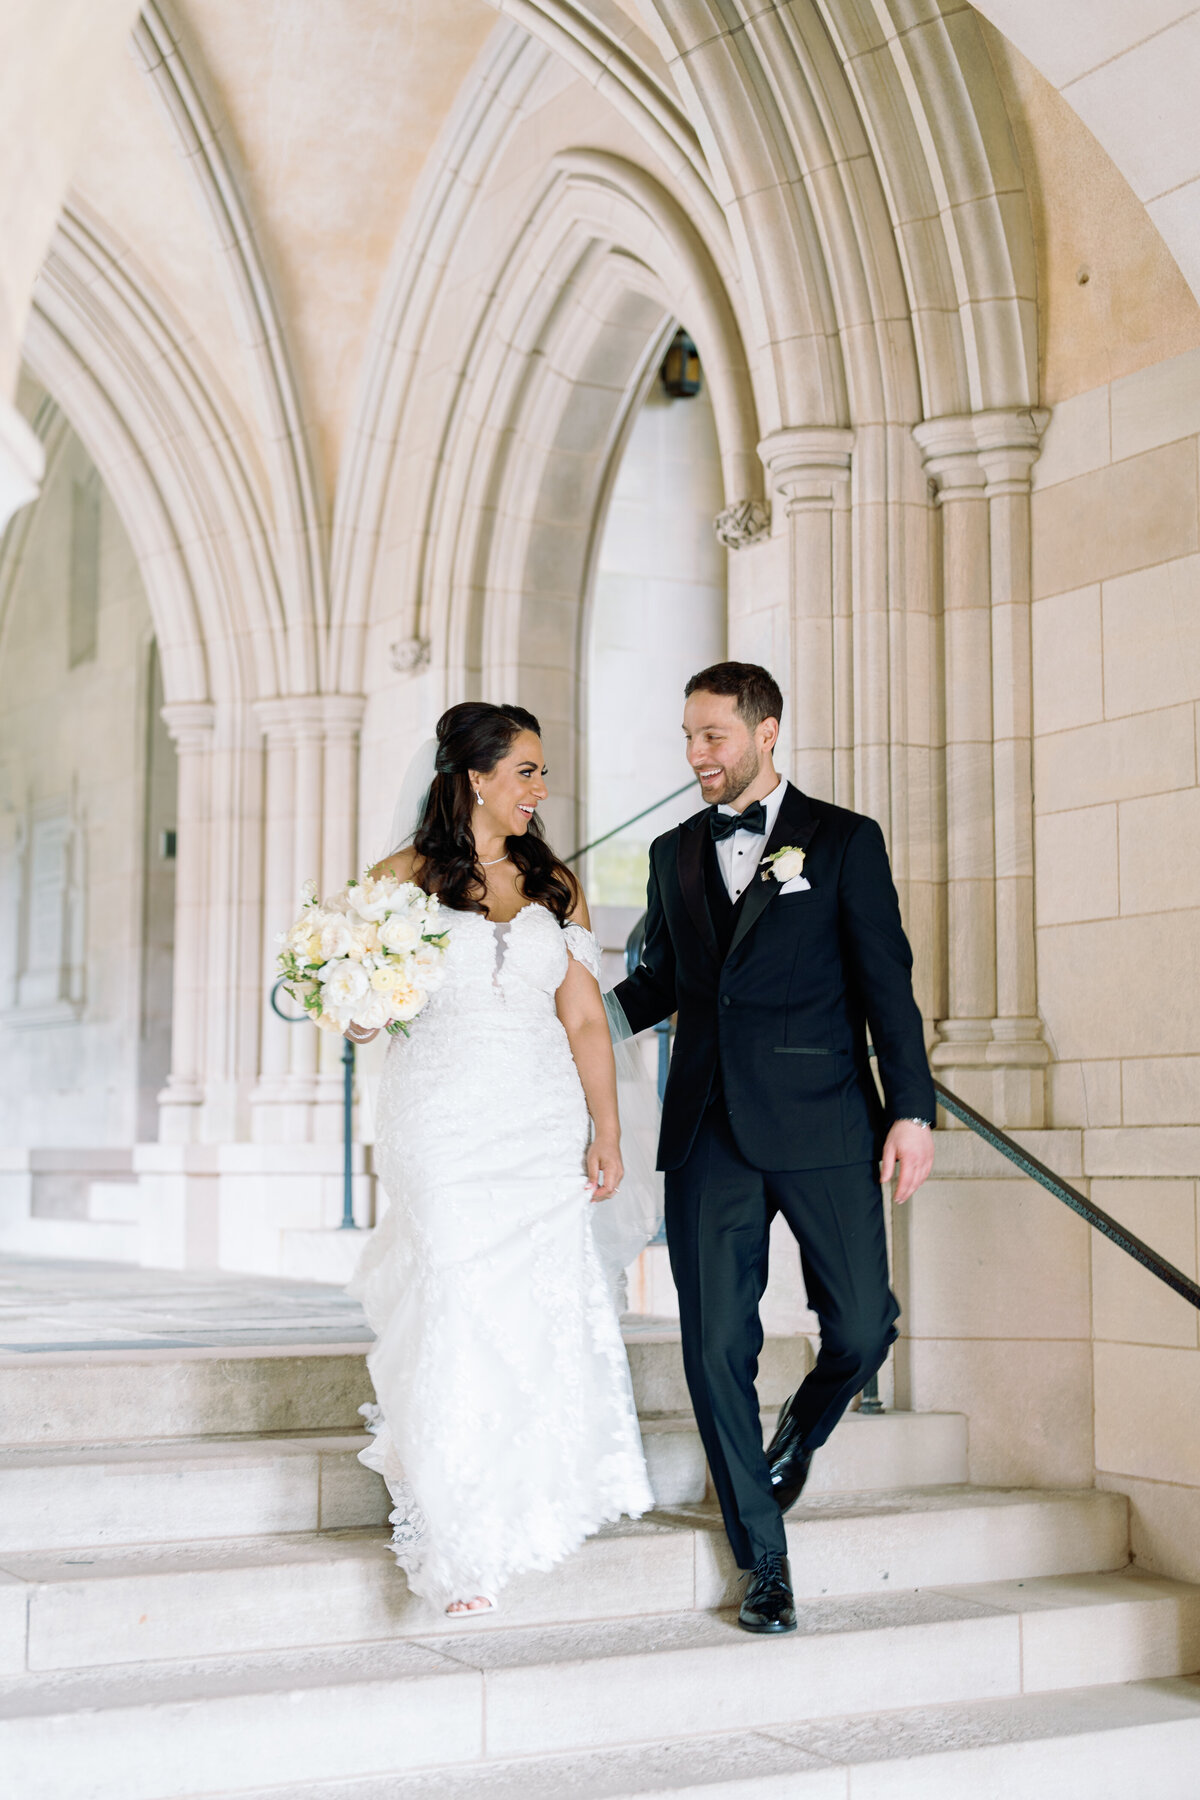 Klaire-Dixius-Photography-Salamander-DC-Washington-DC-wedding-national-cathedral-st-sophias-marios-suzy-bride-groom-59